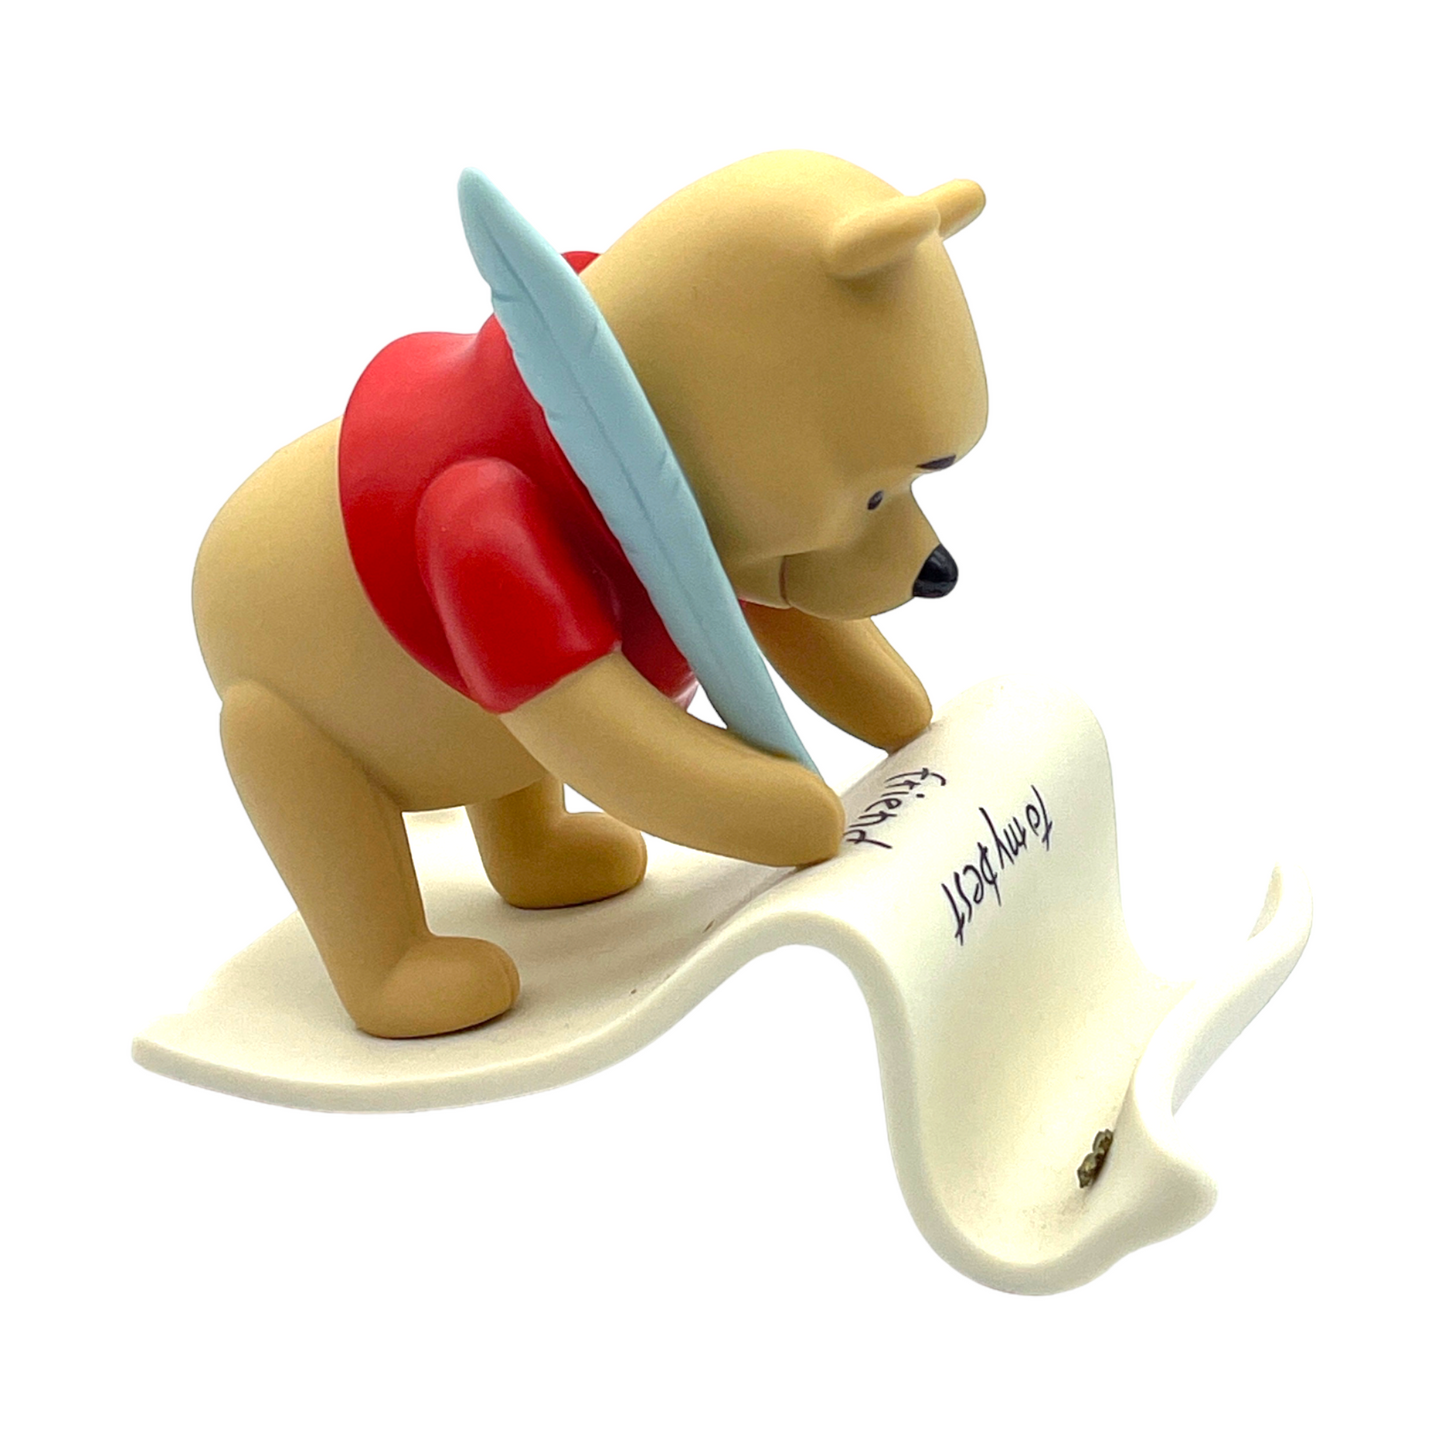 Pooh & Friends - "Pooh Spells Friendship Y.O.U." Figurine - With Box - 4"